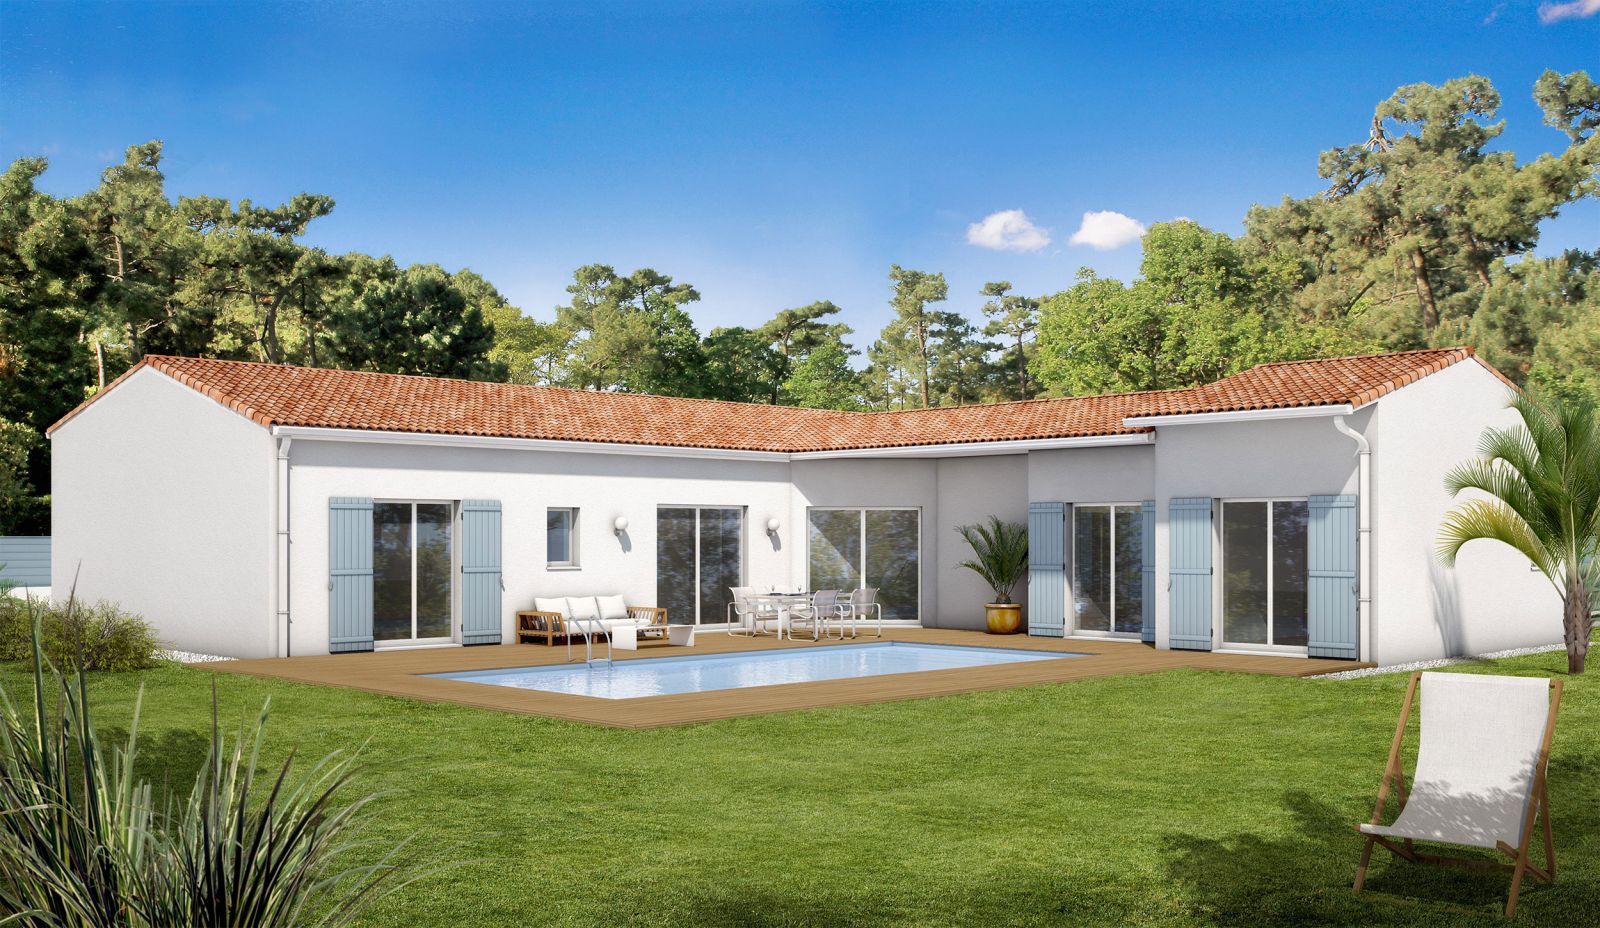 Modèle de maison Oléron de plain-pied - 146 m² - Maisons Bati-France